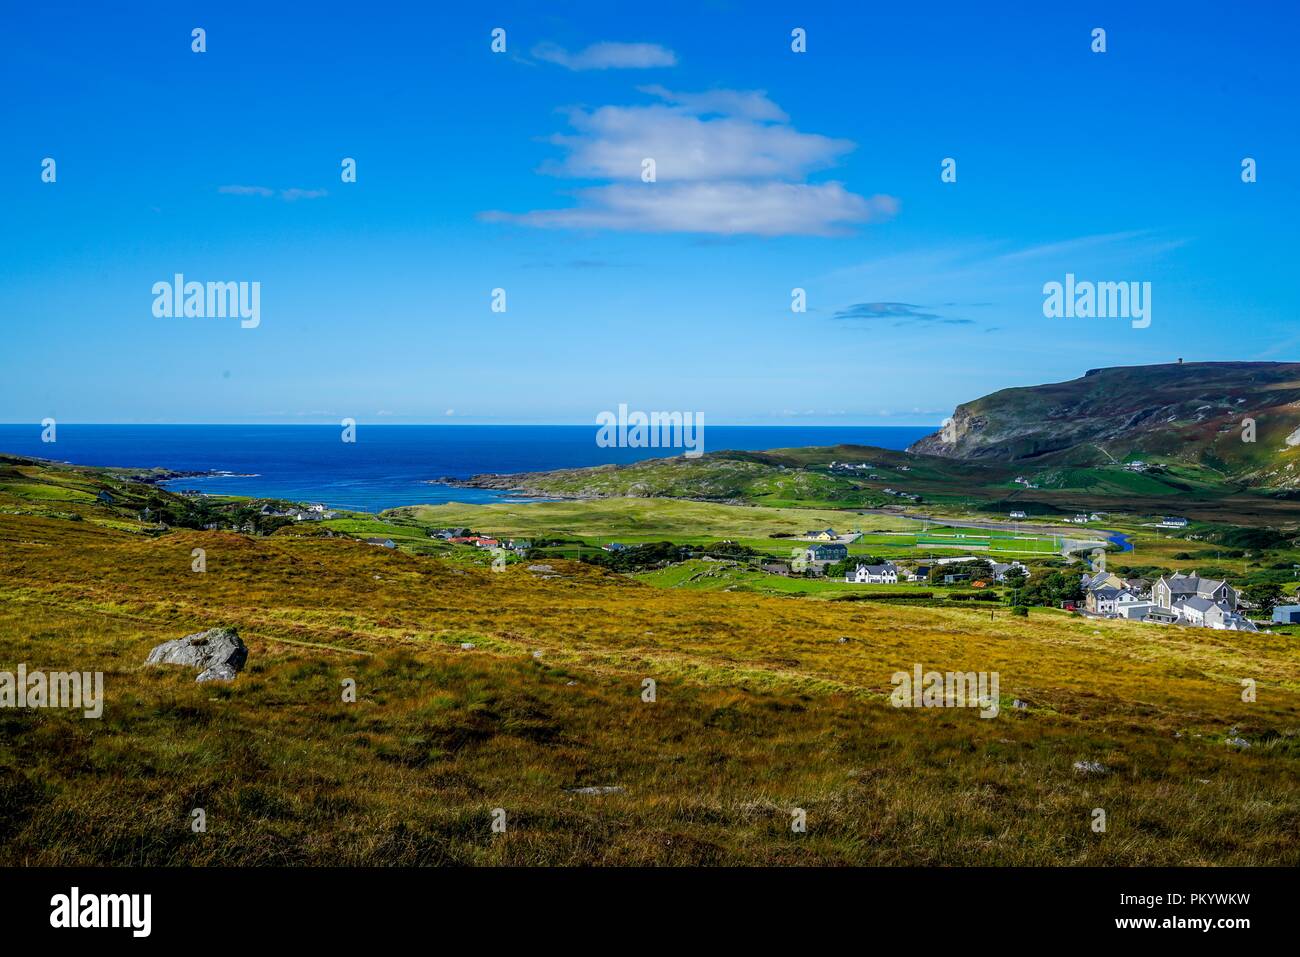 Un regard sur l'océan Atlantique depuis les collines de Greeneville en Irlande. Banque D'Images